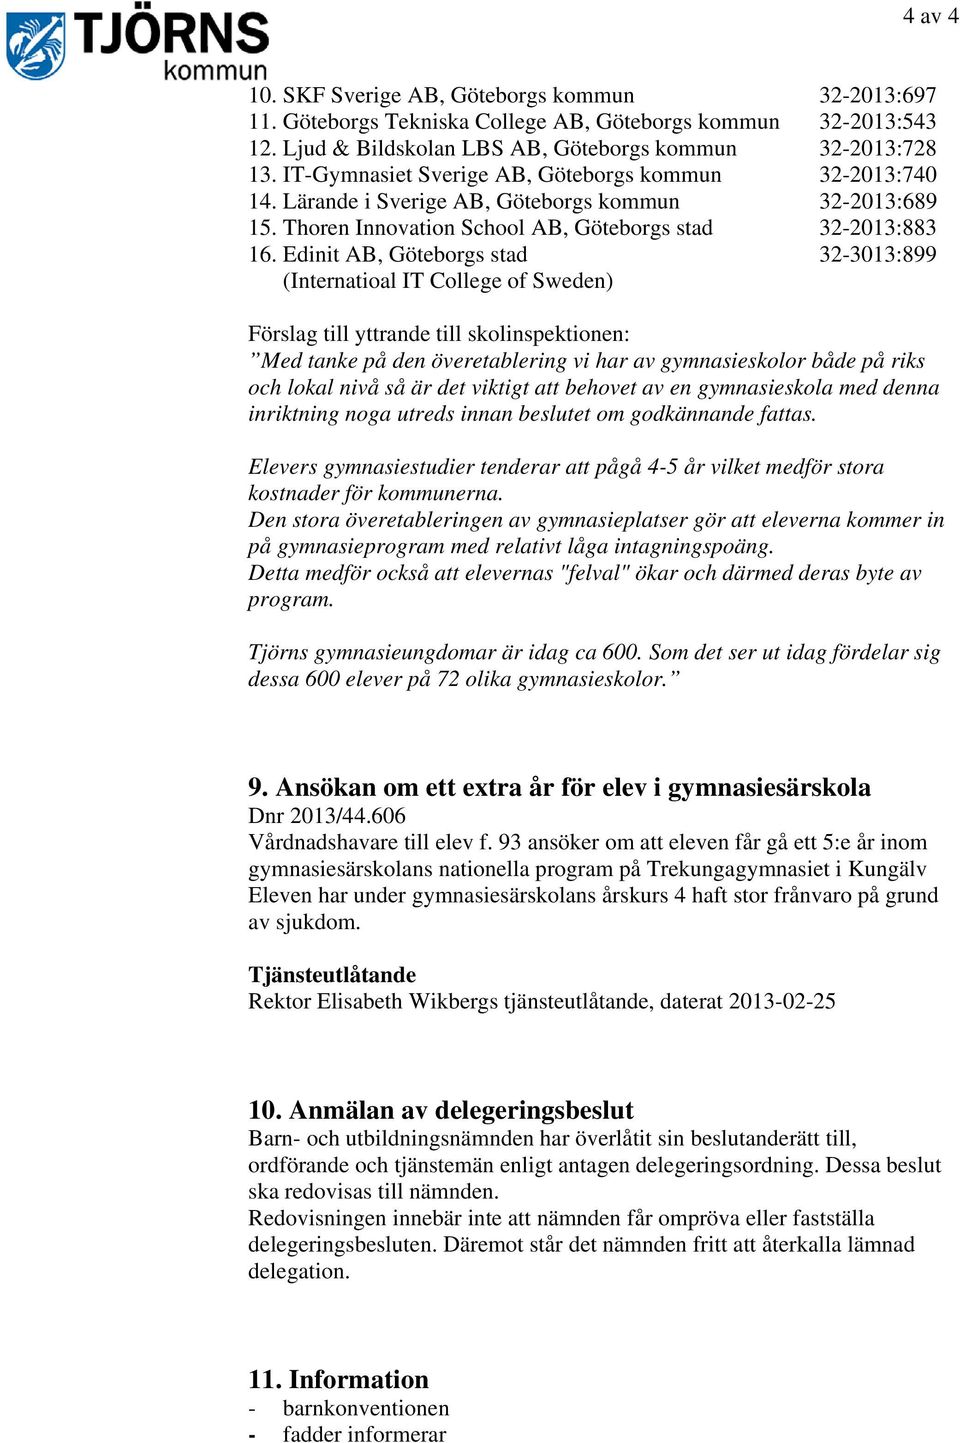 Edinit AB, Göteborgs stad 32-3013:899 (Internatioal IT College of Sweden) Förslag till yttrande till skolinspektionen: Med tanke på den överetablering vi har av gymnasieskolor både på riks och lokal